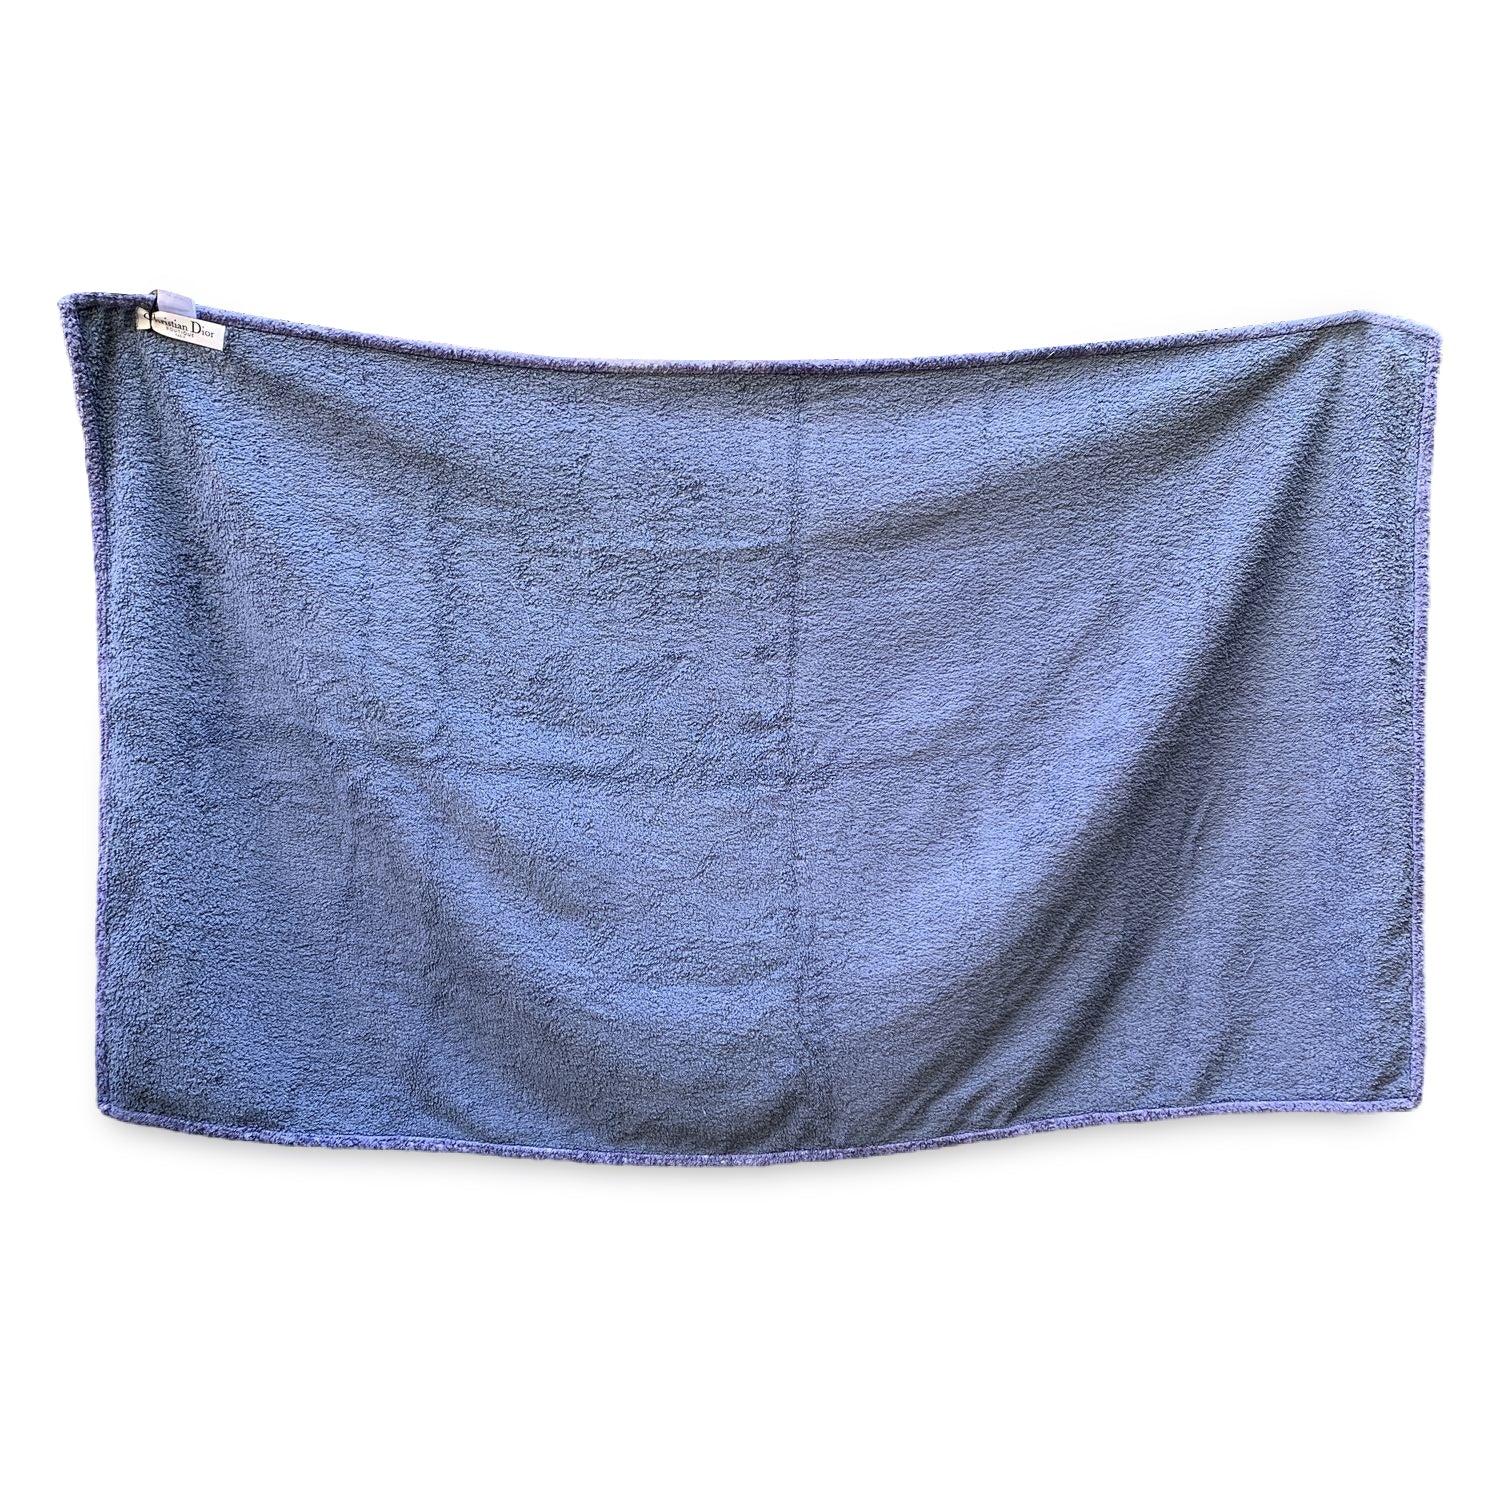 Großes Strandtuch aus Frottee von Christian Dior mit schrägem Monogram-Muster. Blaue Farbe. 100% Baumwolle. Abmessungen: 35 x 60 Zoll - 88,8 x 152,4 cm. Details MATERIAL: Baumwolle FARBE: Blau MODELL: Schräg GENDER: Unisex Erwachsene